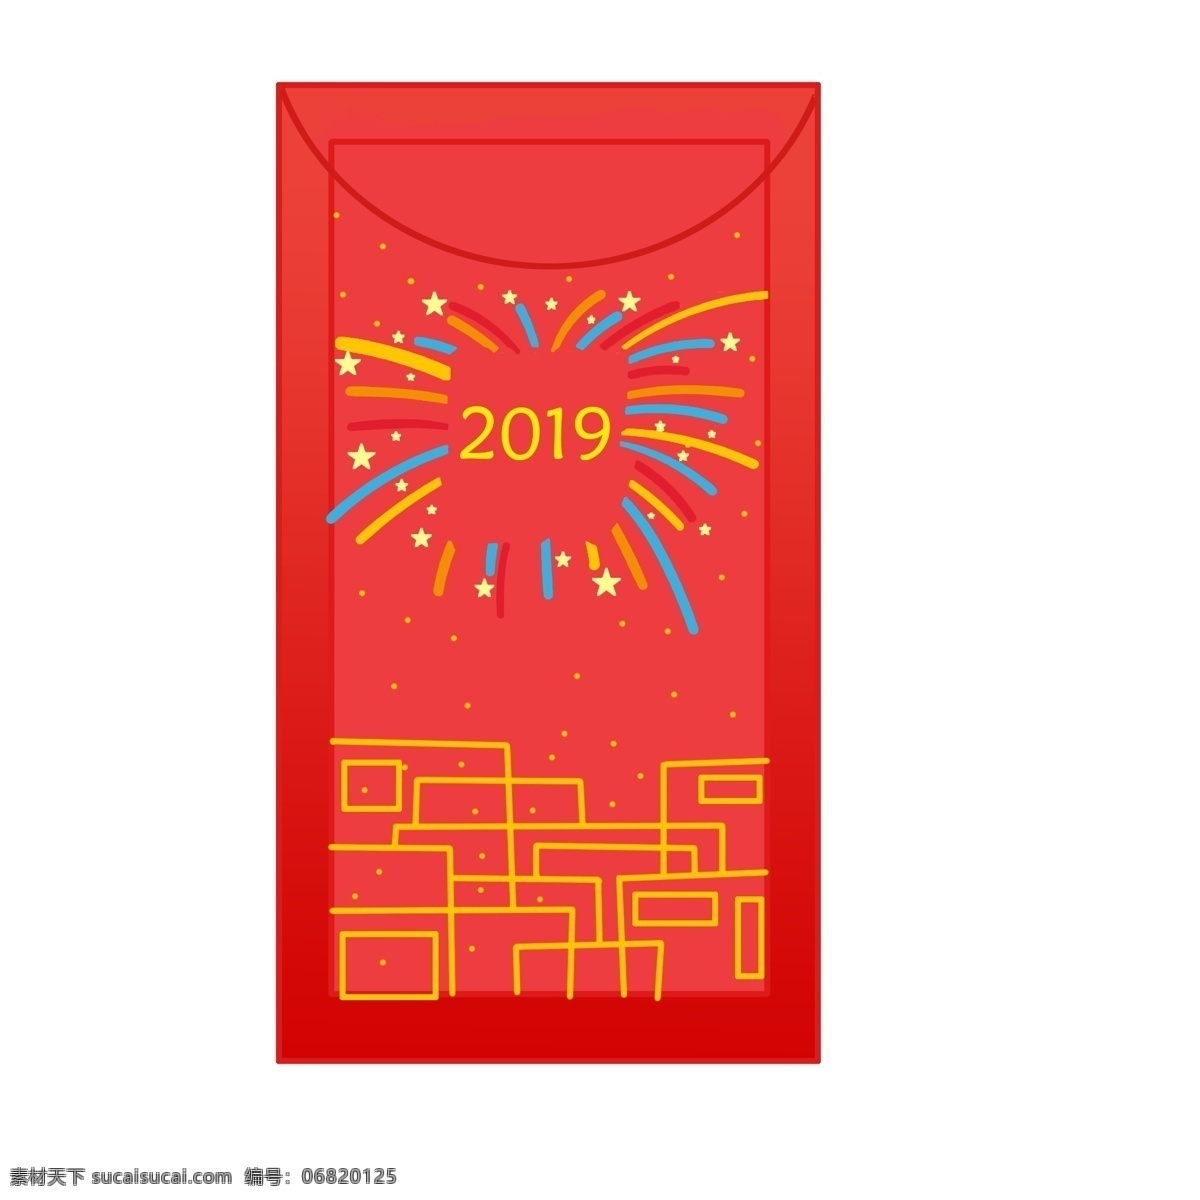 2019 红红 大 红包 线段 烟花 星星 圆点 彩色 蓝色 粉色 黄色 大大 小 猪 庆 新年